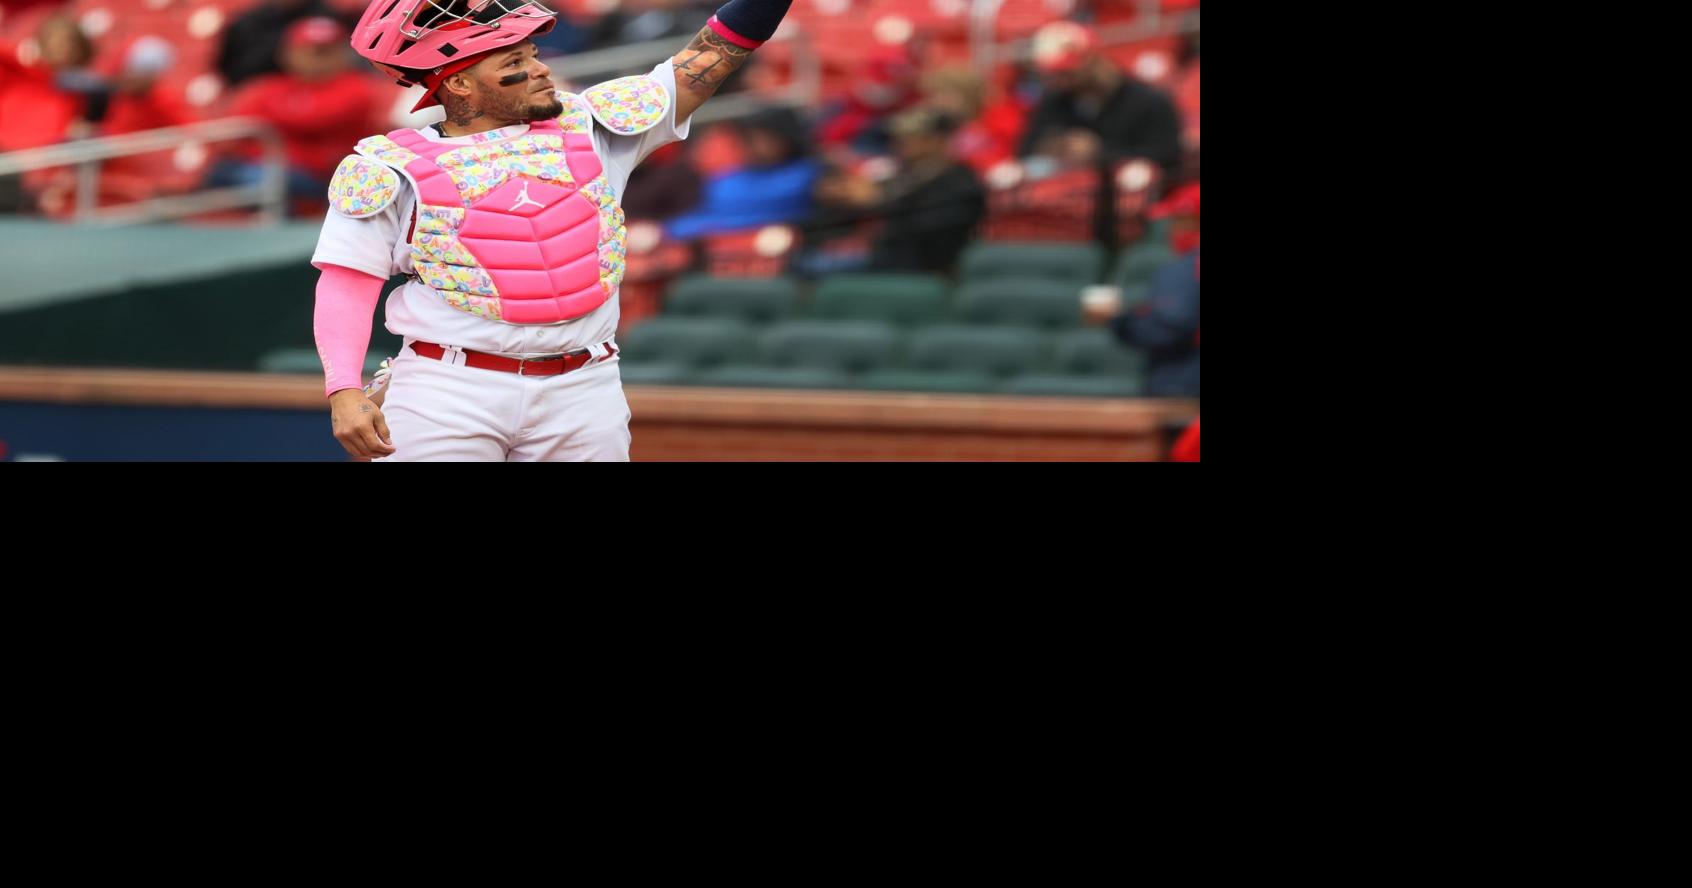 Yadier Molina MLB Fan Jerseys for sale